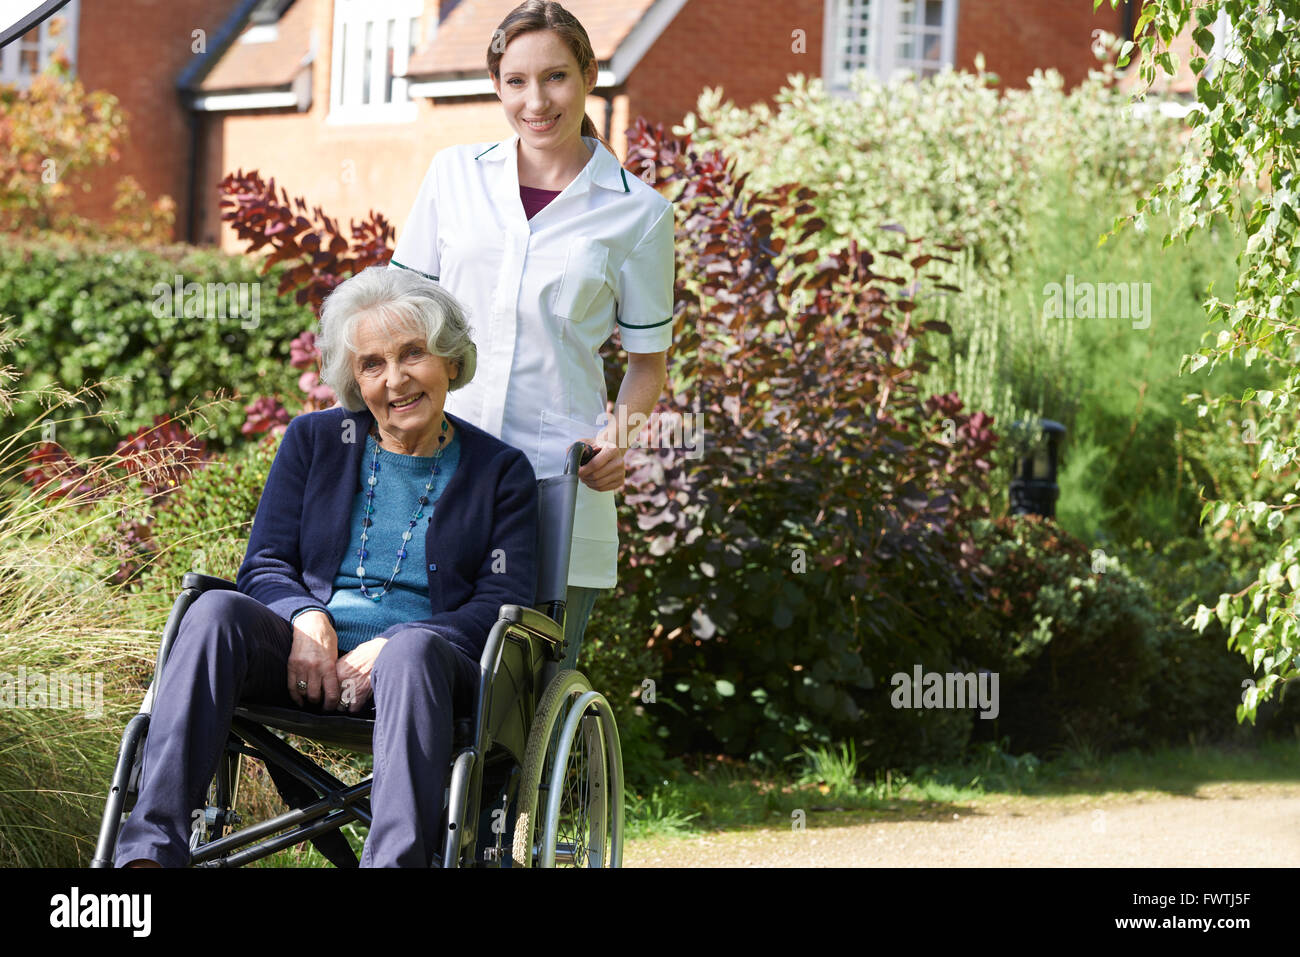 Portrait of Senior Woman soignant poussant en fauteuil roulant Banque D'Images